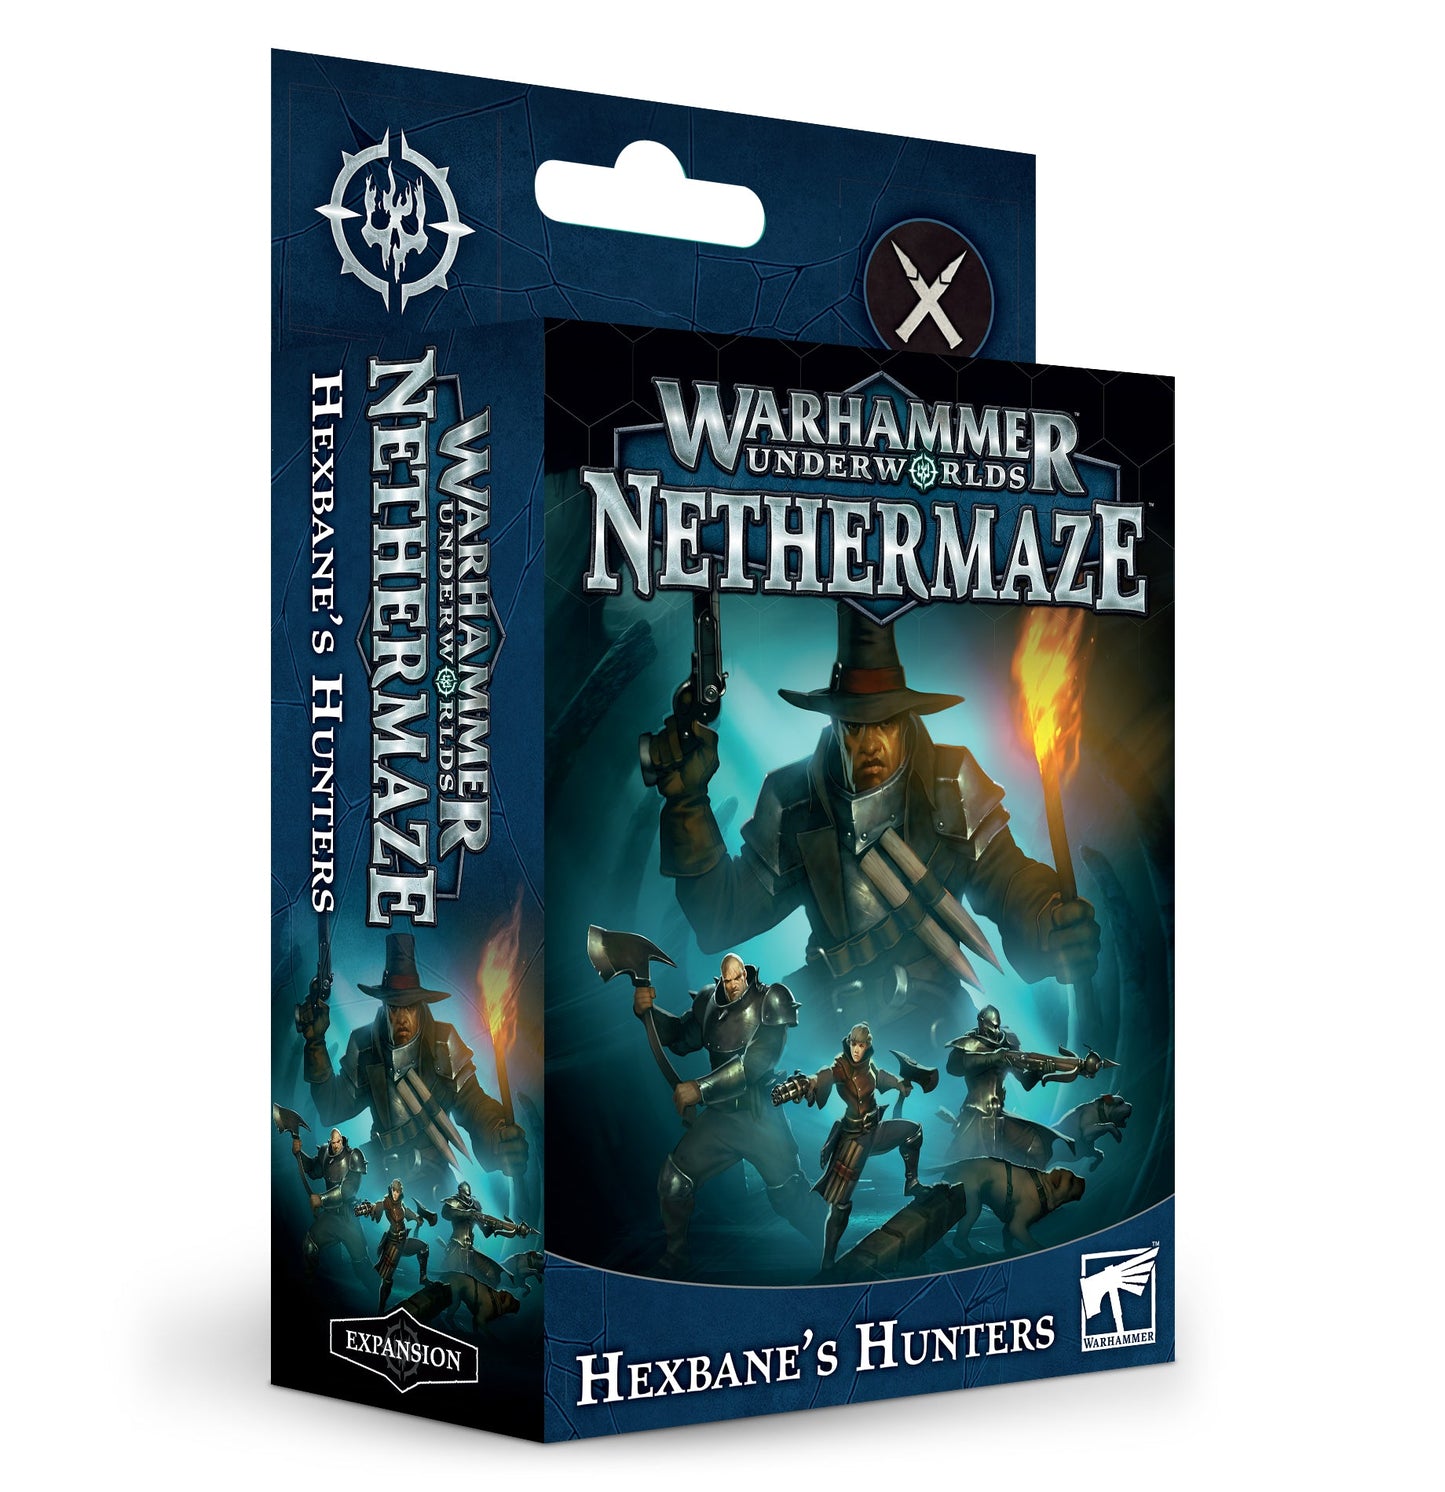 Warhammer Underworlds Nethermaze: Hexbane's Hunters - Gamescape